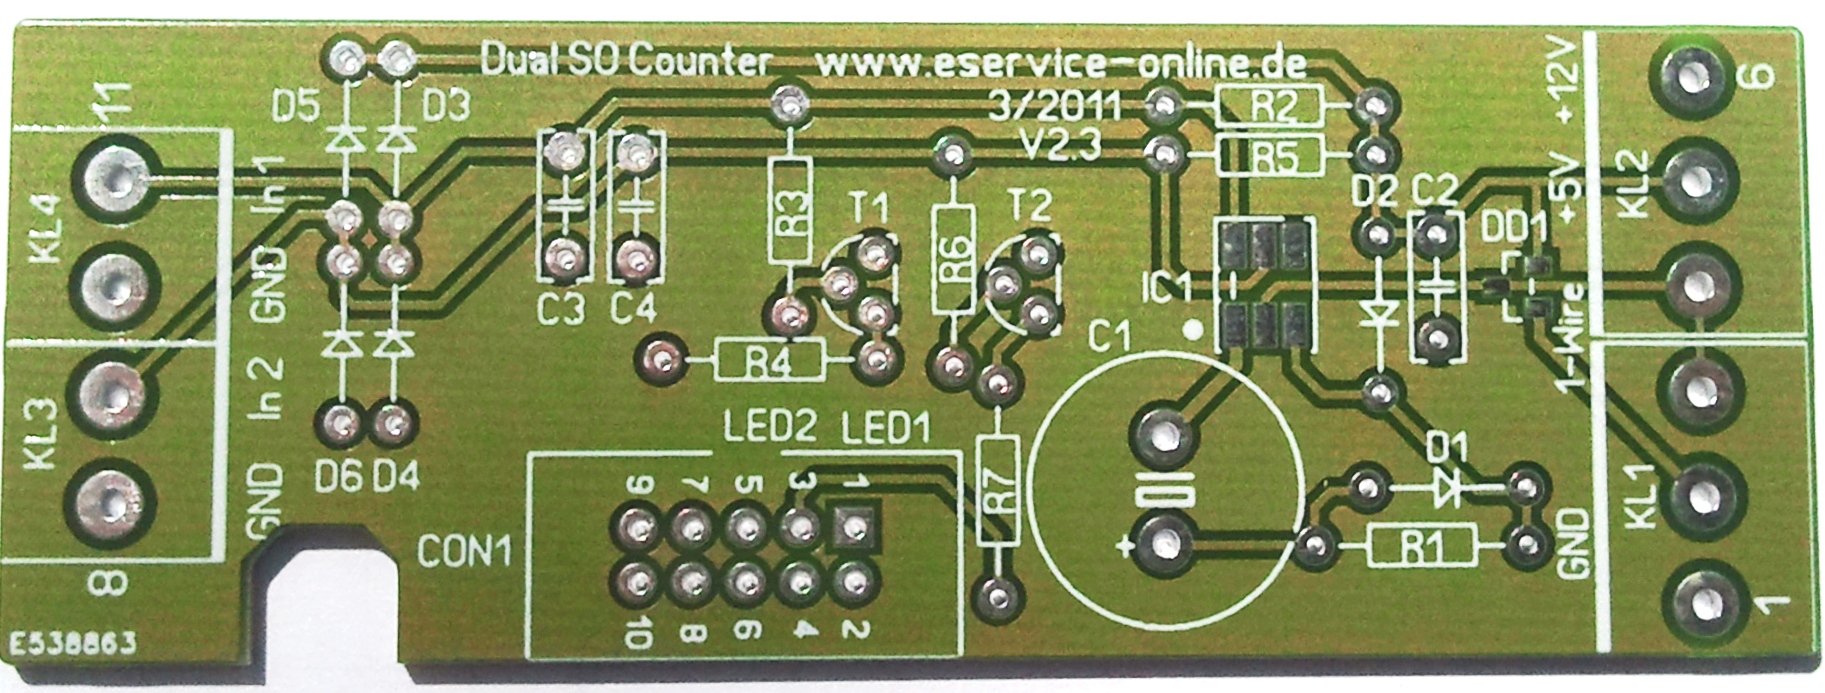 1-Wire S0 counter board